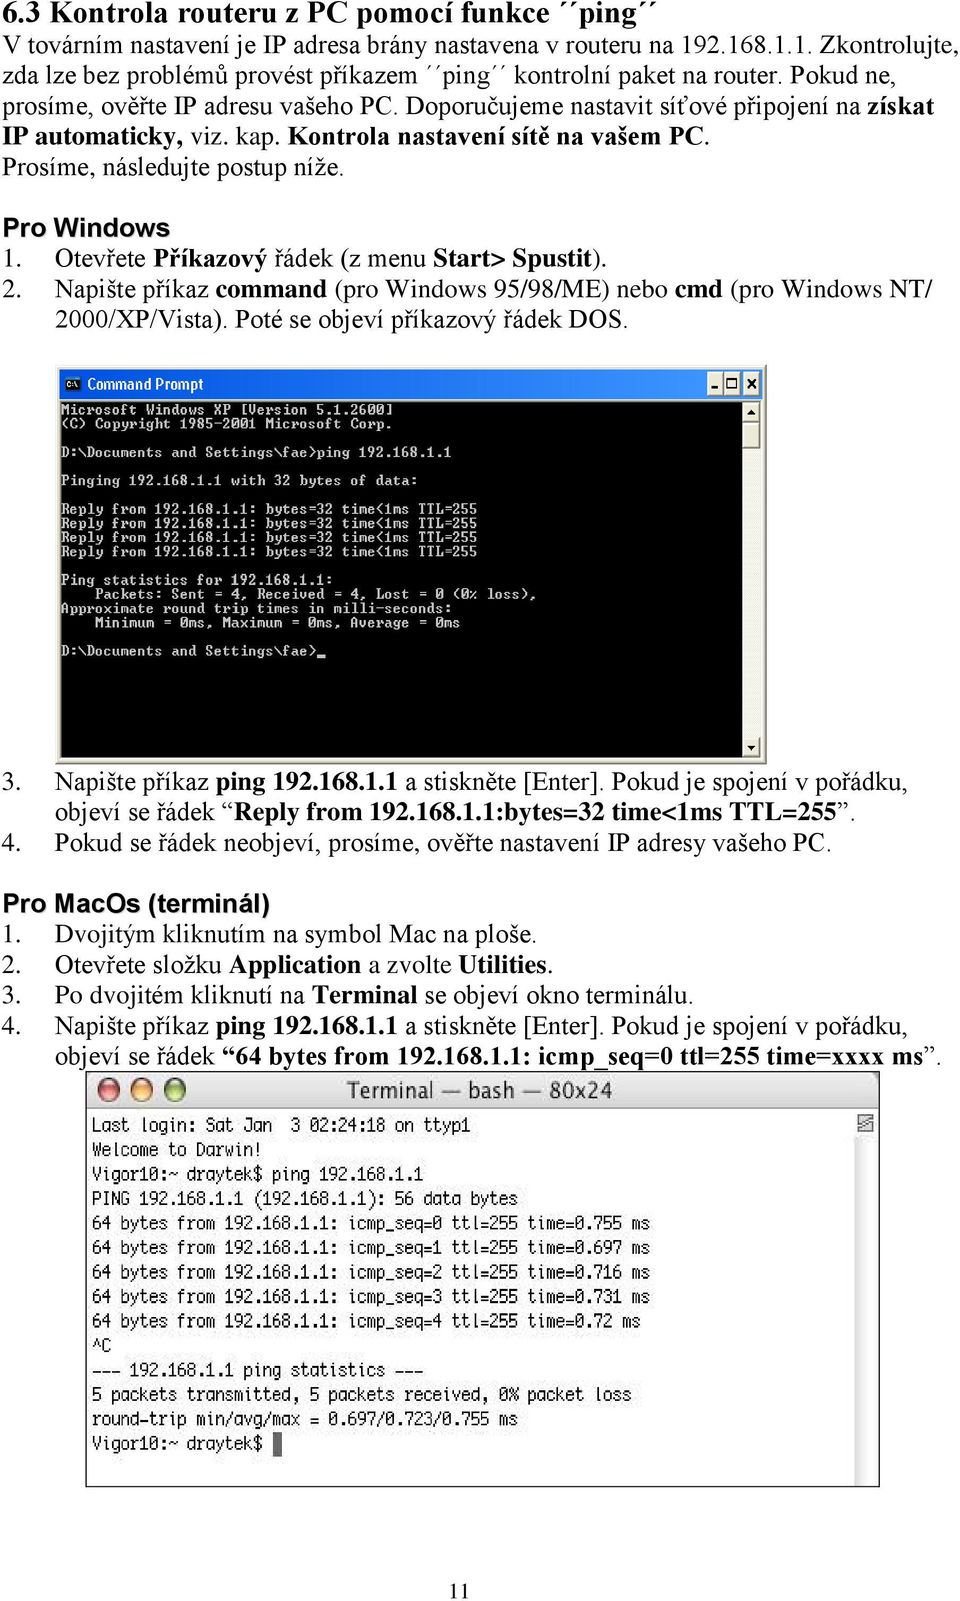 Pro Windows 1. Otevřete Příkazový řádek (z menu Start> Spustit). 2. Napište příkaz command (pro Windows 95/98/ME) nebo cmd (pro Windows NT/ 2000/XP/Vista). Poté se objeví příkazový řádek DOS. 3.